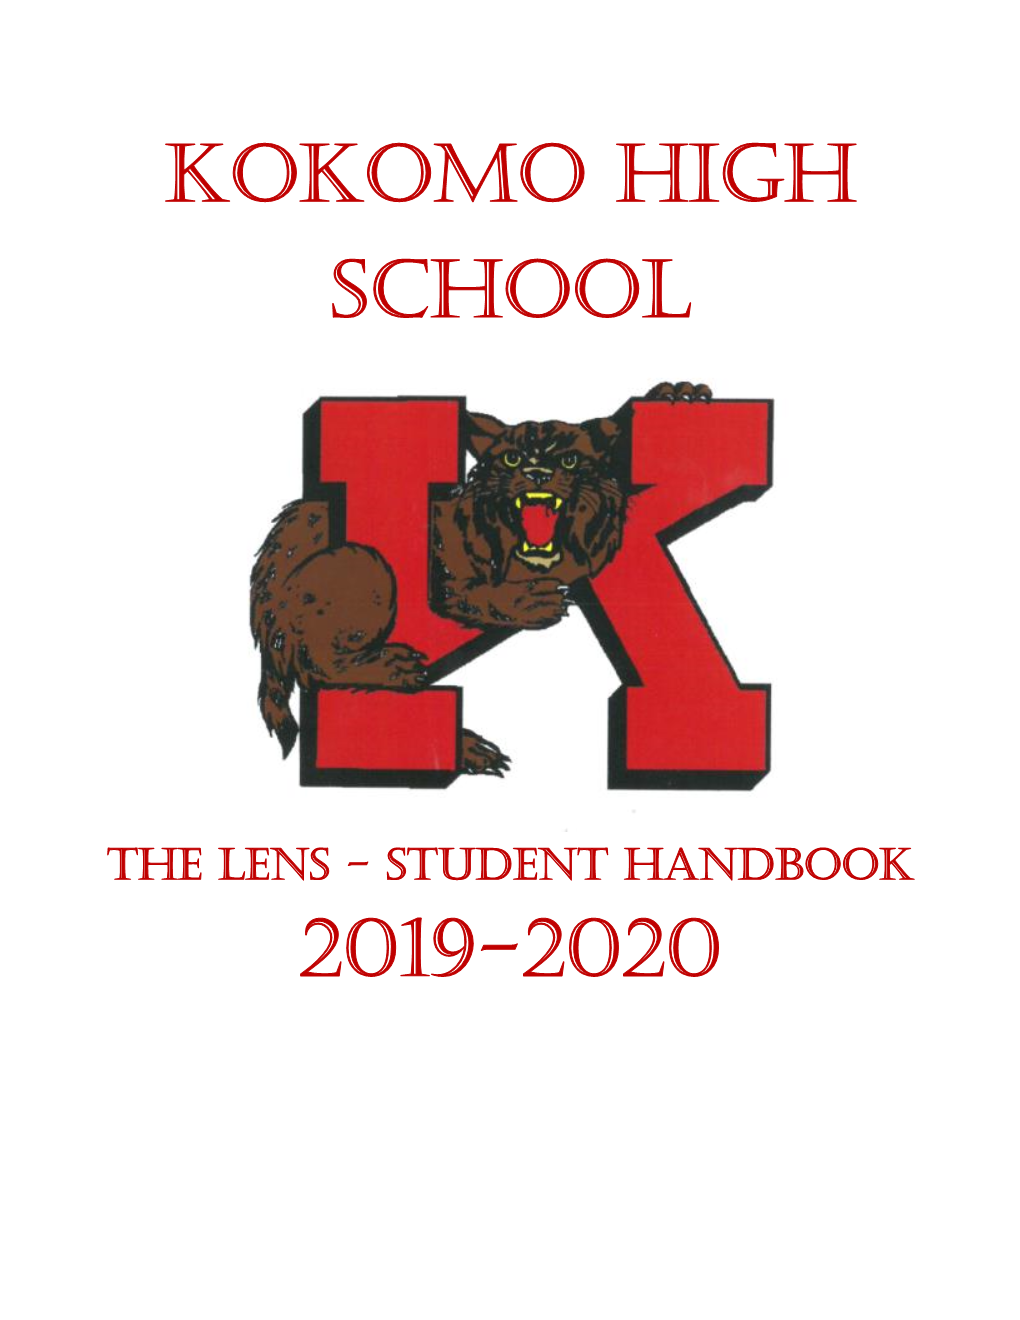 Kokomo High School 2019-2020